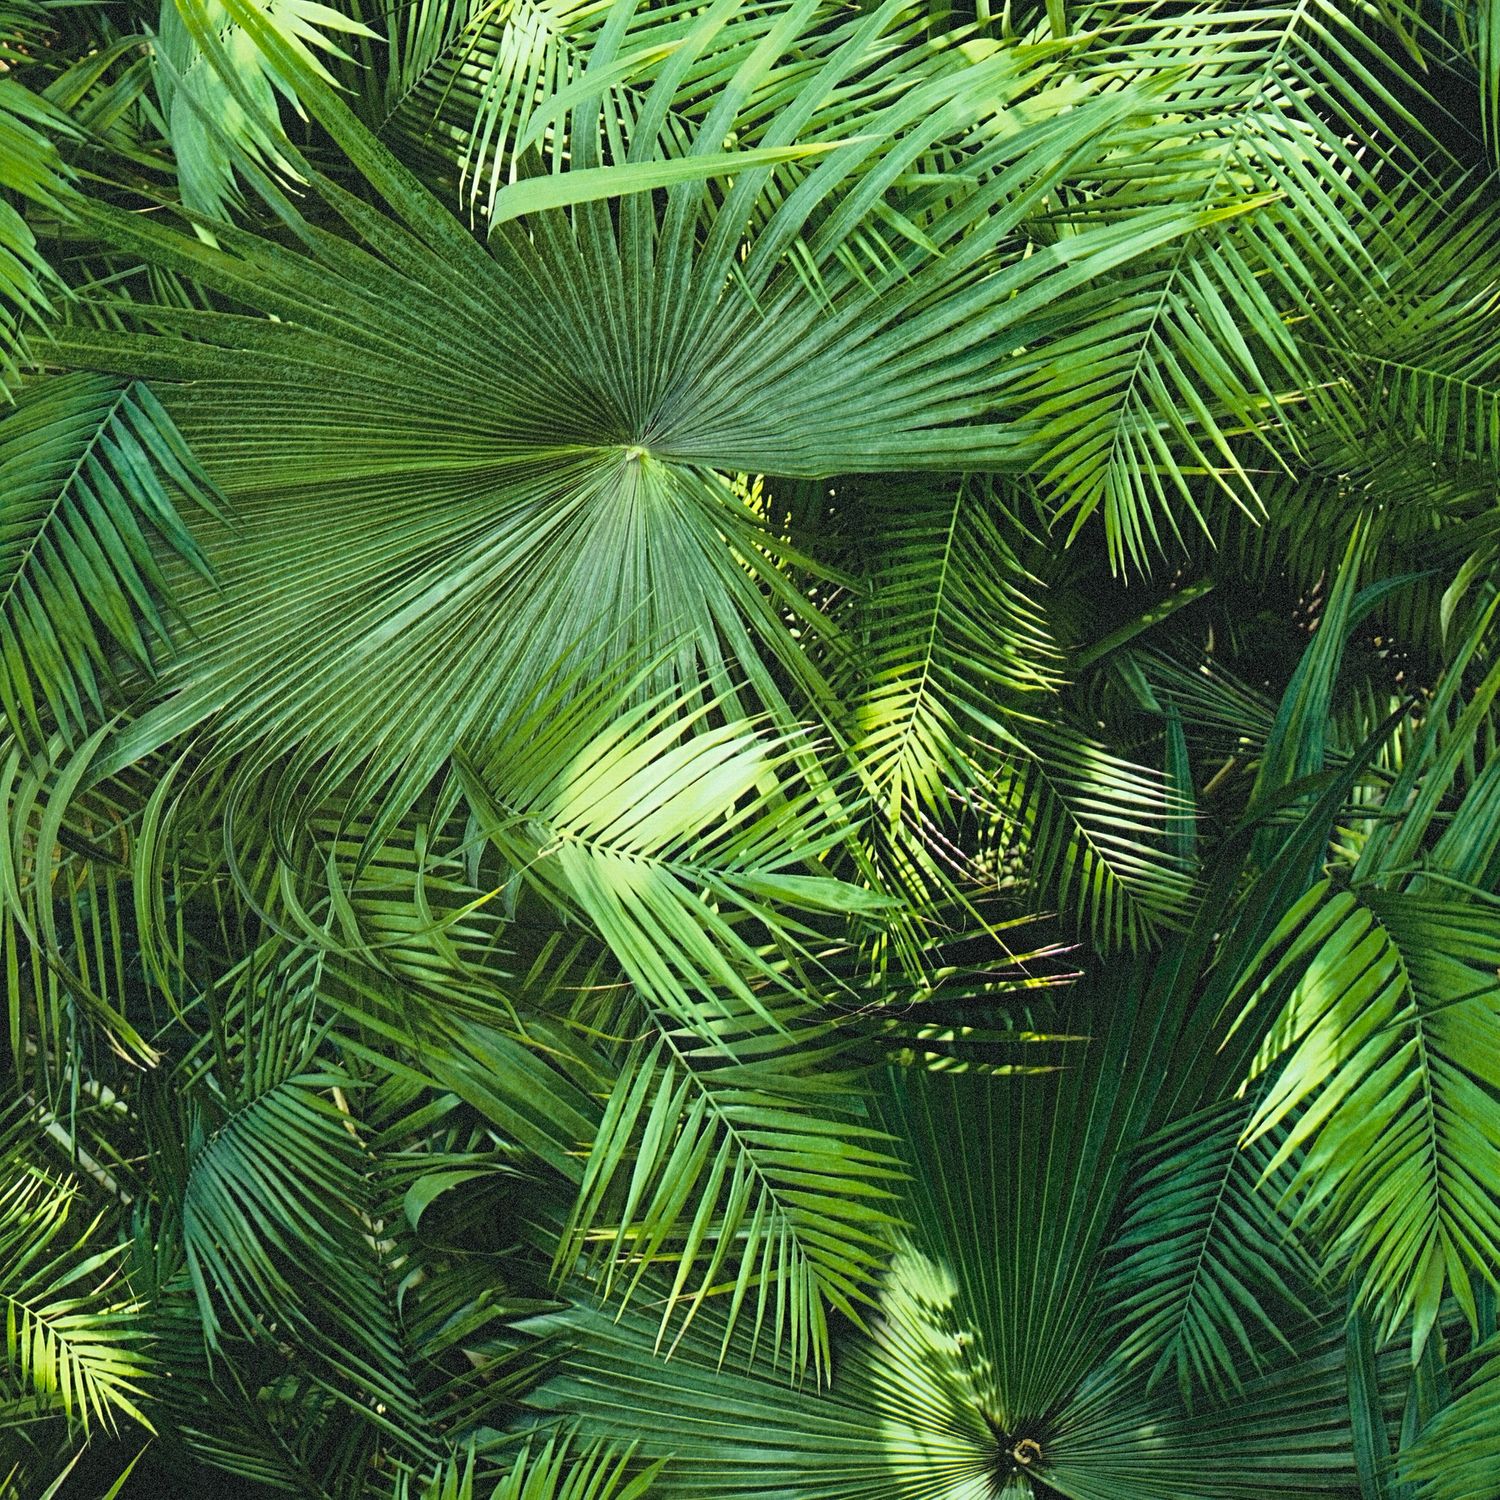 Papier peint nature Profhome 362001-GU papier peint intissé lisse au design de jungle mat vert 5,33 m2